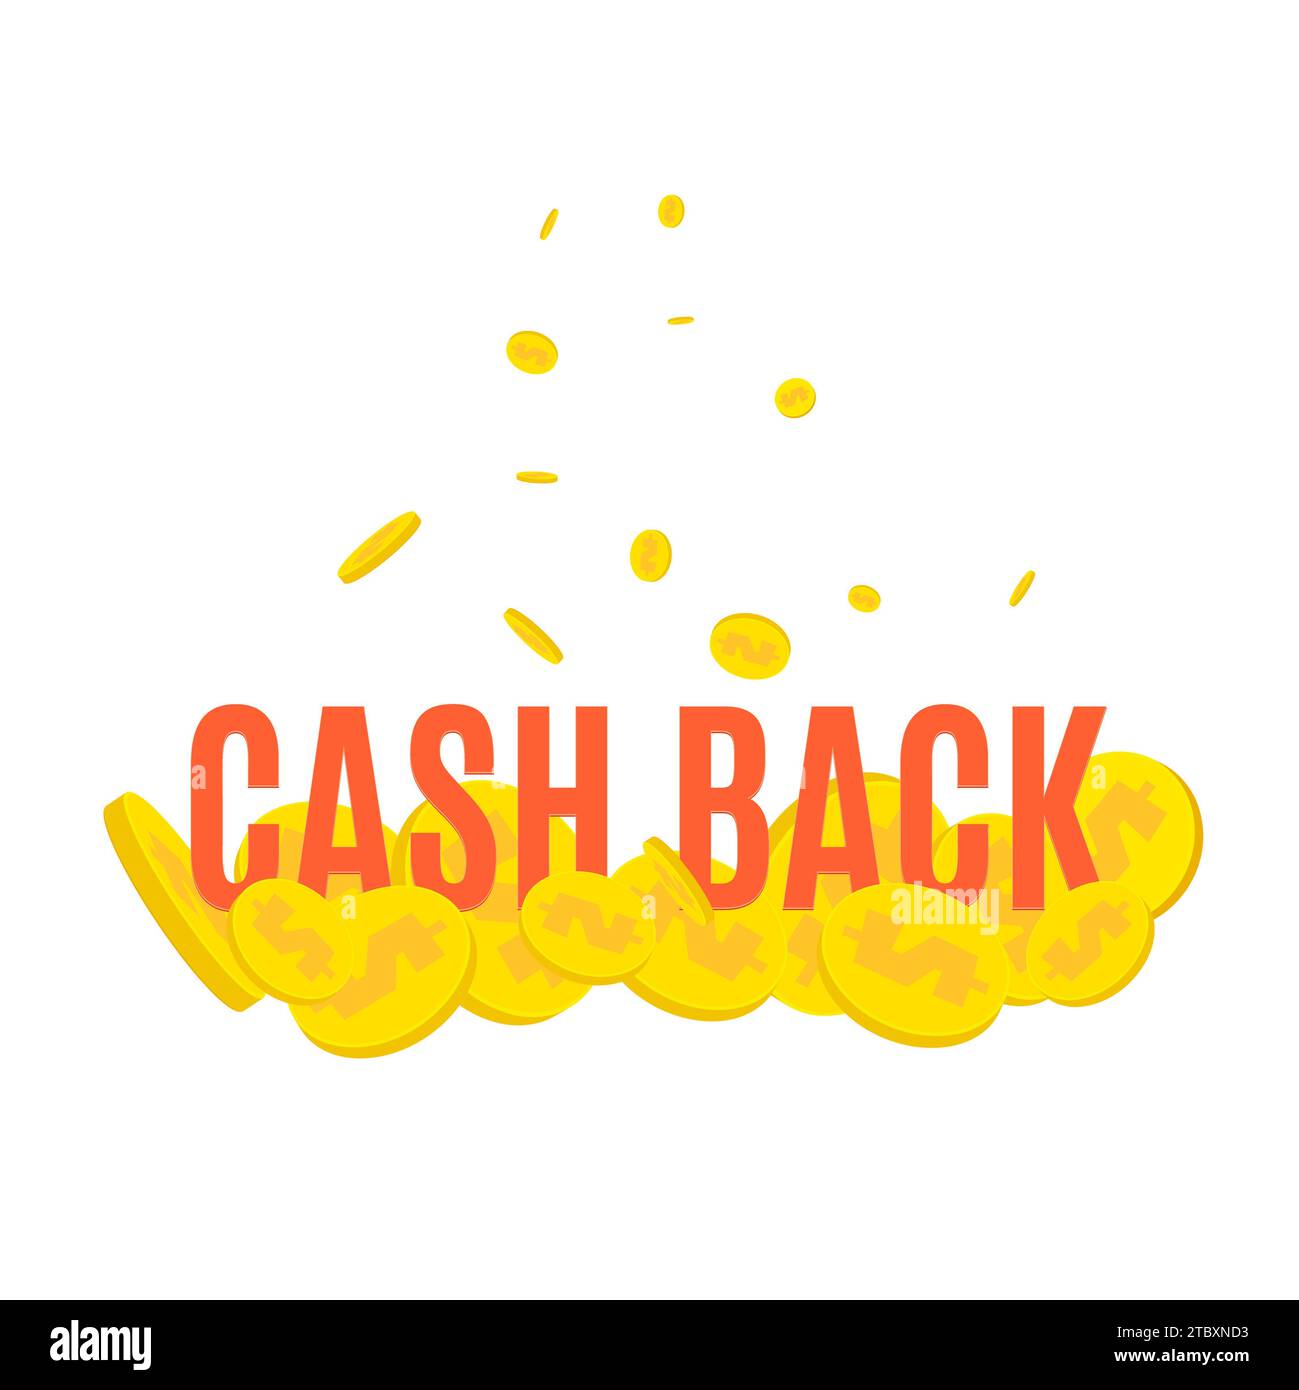 Cashback, illustrazione concettuale Foto Stock